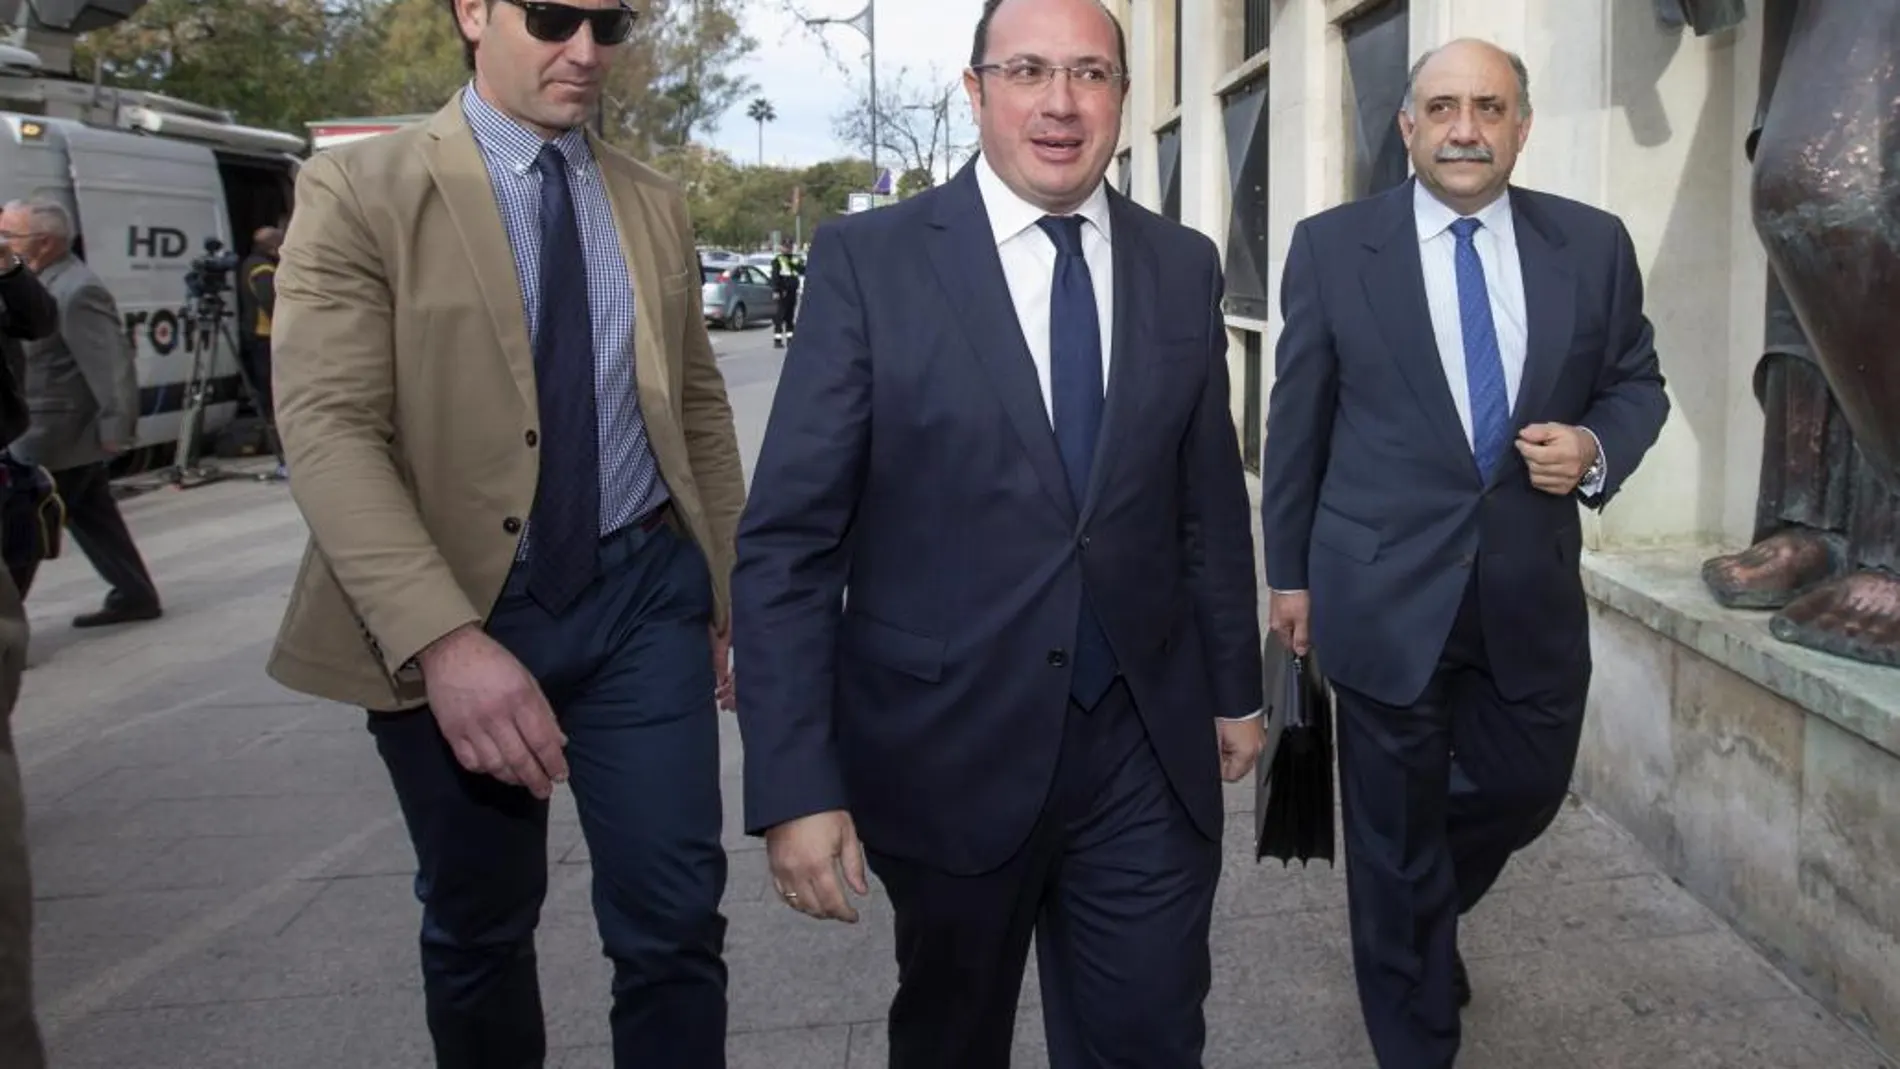 El presidente del Gobierno de Murcia, Pedro Antonio Sánchez (c), acompañado por su abogado, Francisco Martínez-Escribano (d), a su llegada al Tribunal Superior de Justicia de Murcia